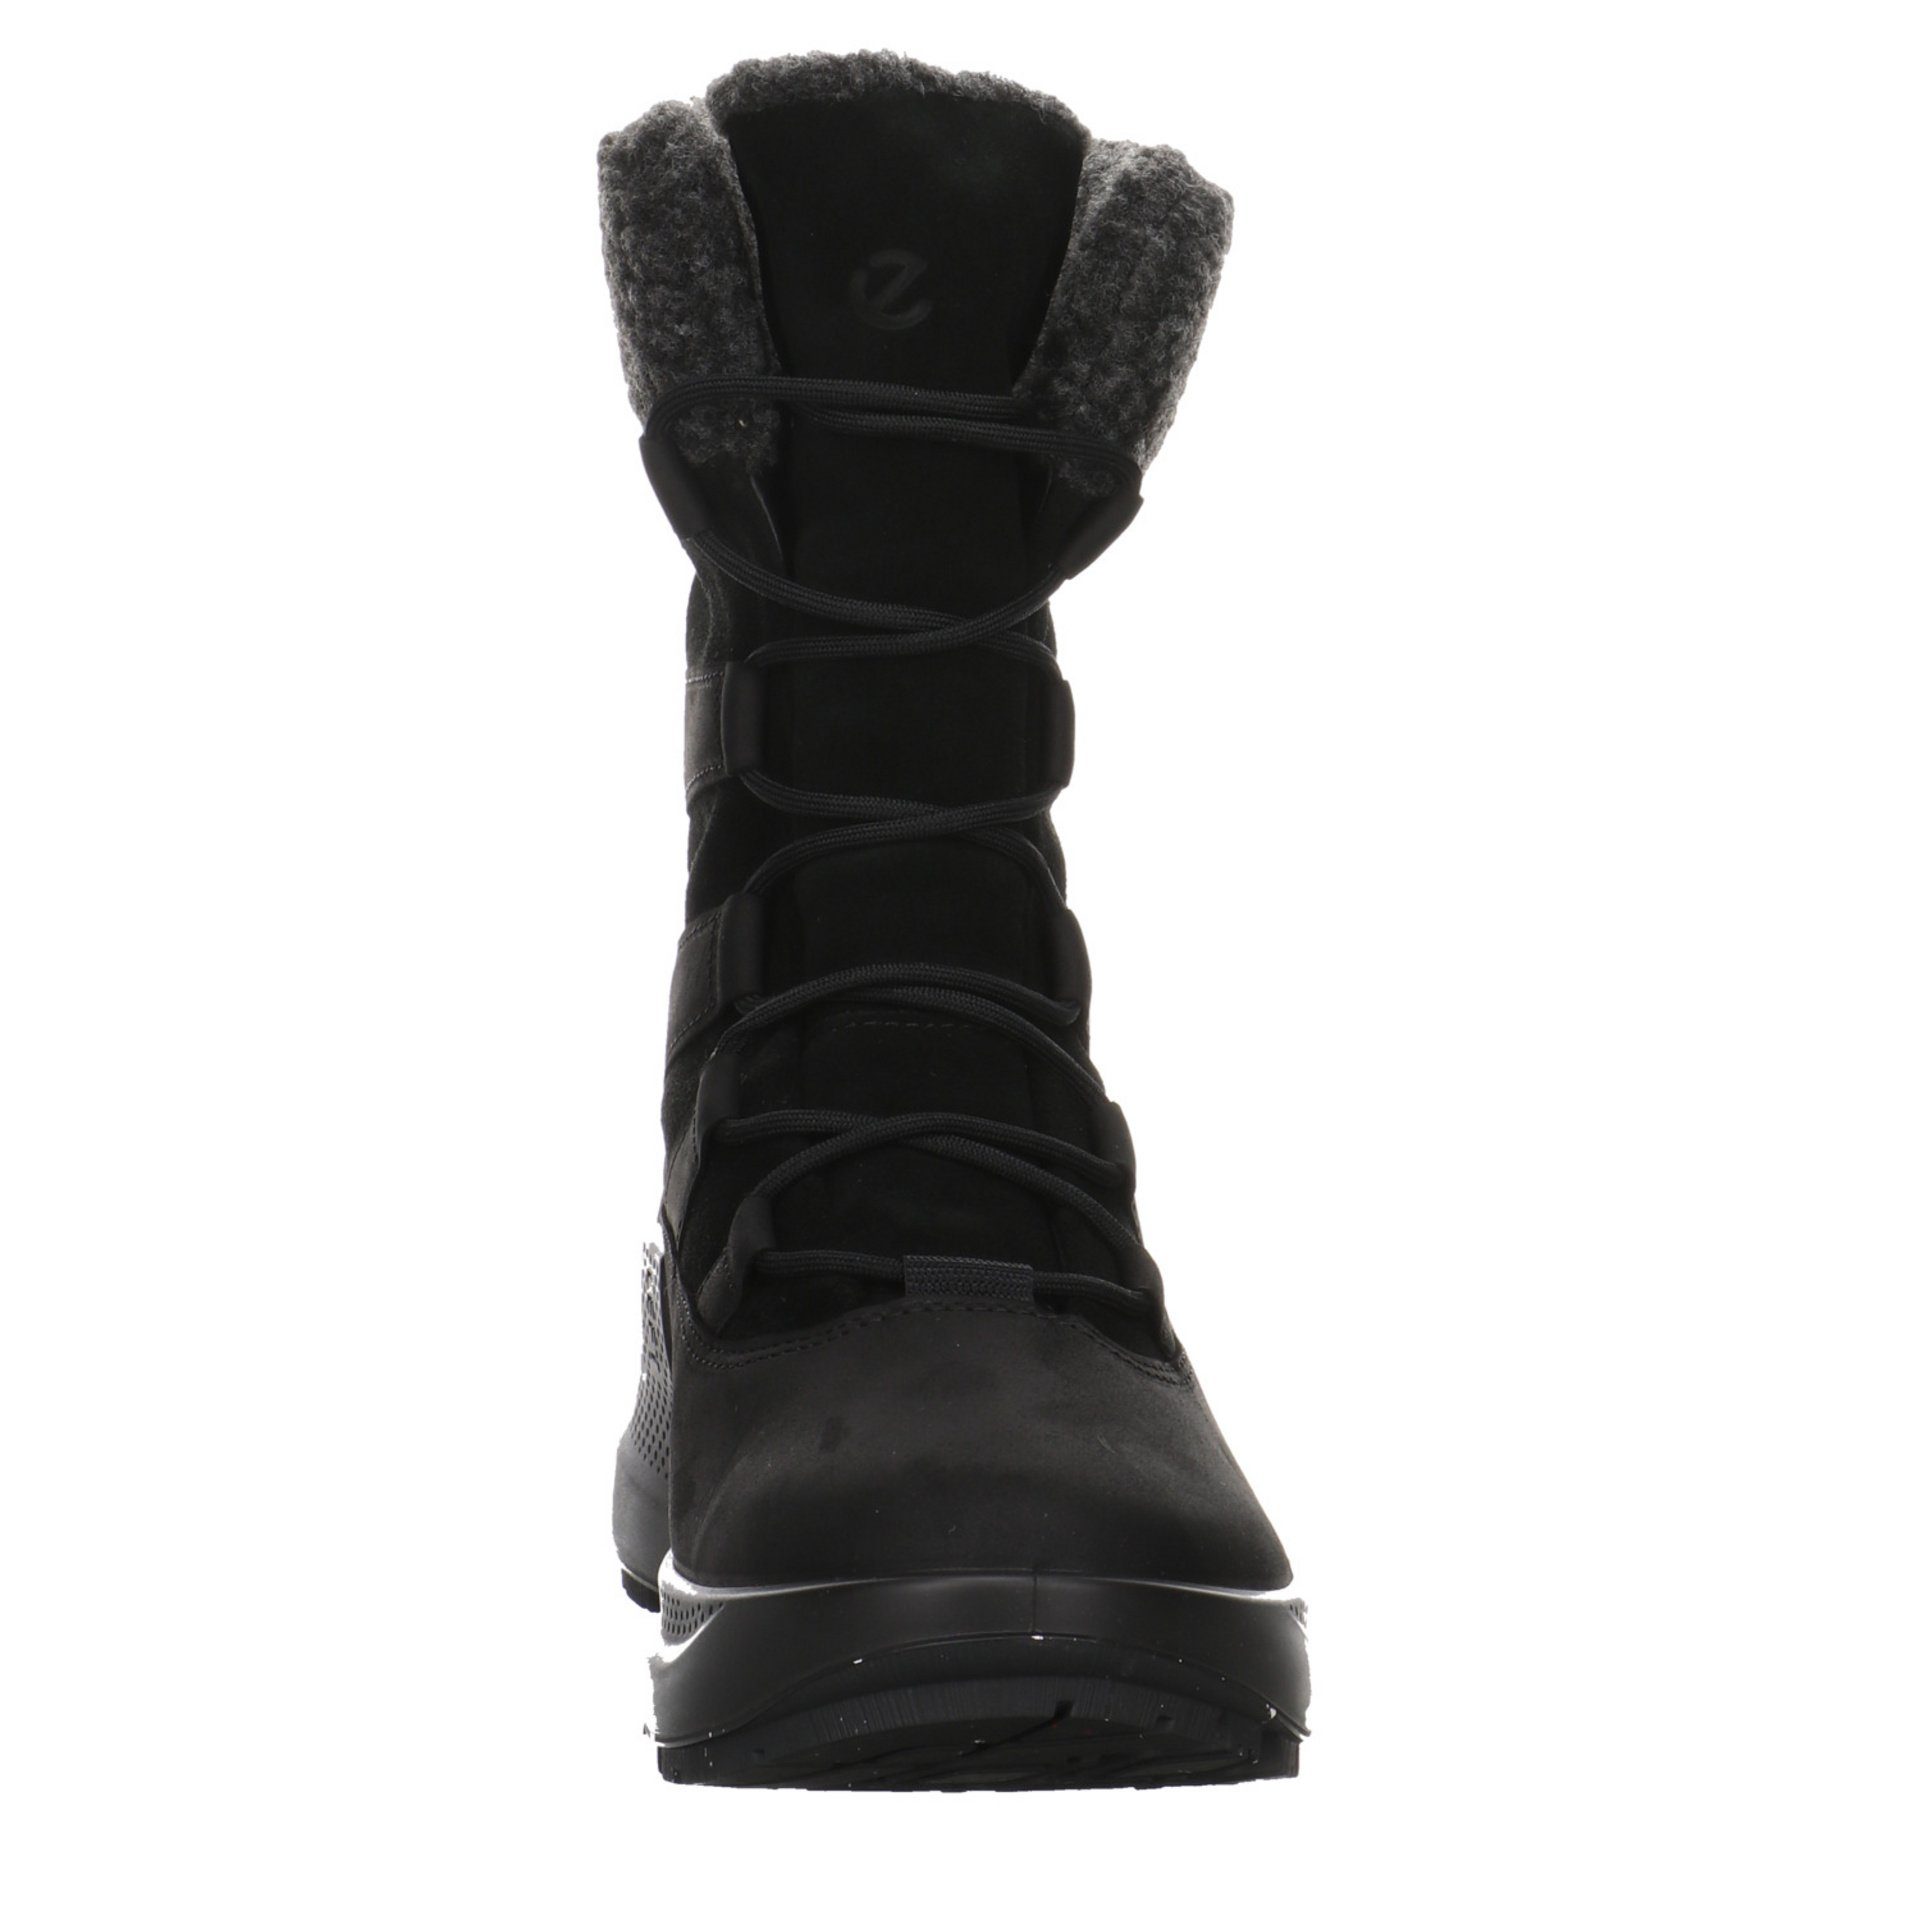 Ecco Damen Stiefel Schuhe Freizeit Leder-/Textilkombination BLACK/BLACK Solice Stiefel Elegant Boots